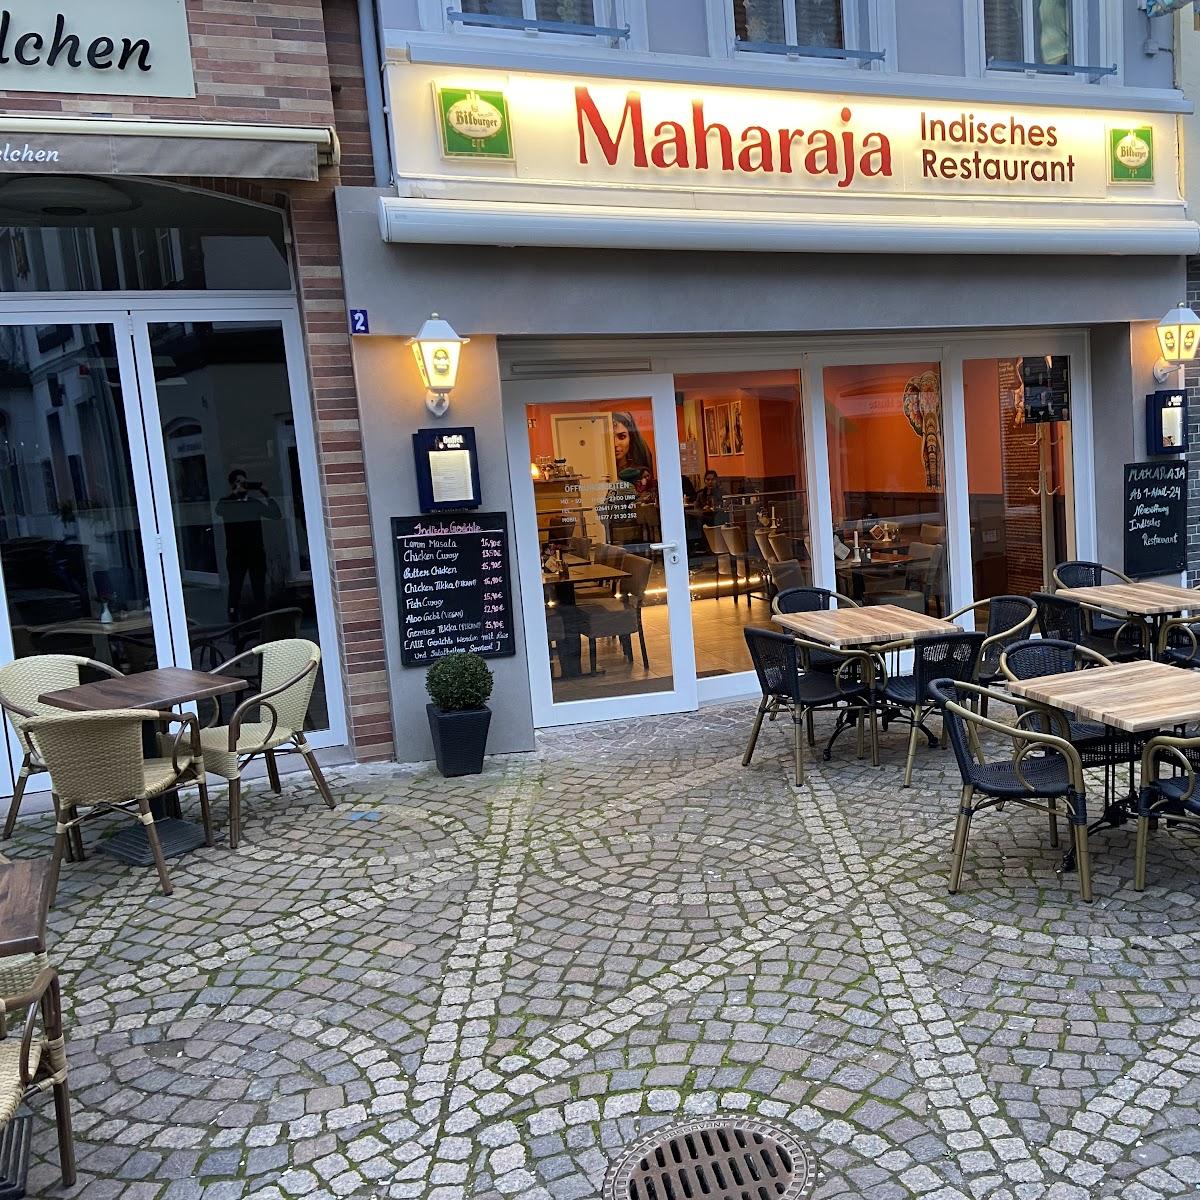 Restaurant "Maharaja indisches Restaurant" in Bad Neuenahr-Ahrweiler